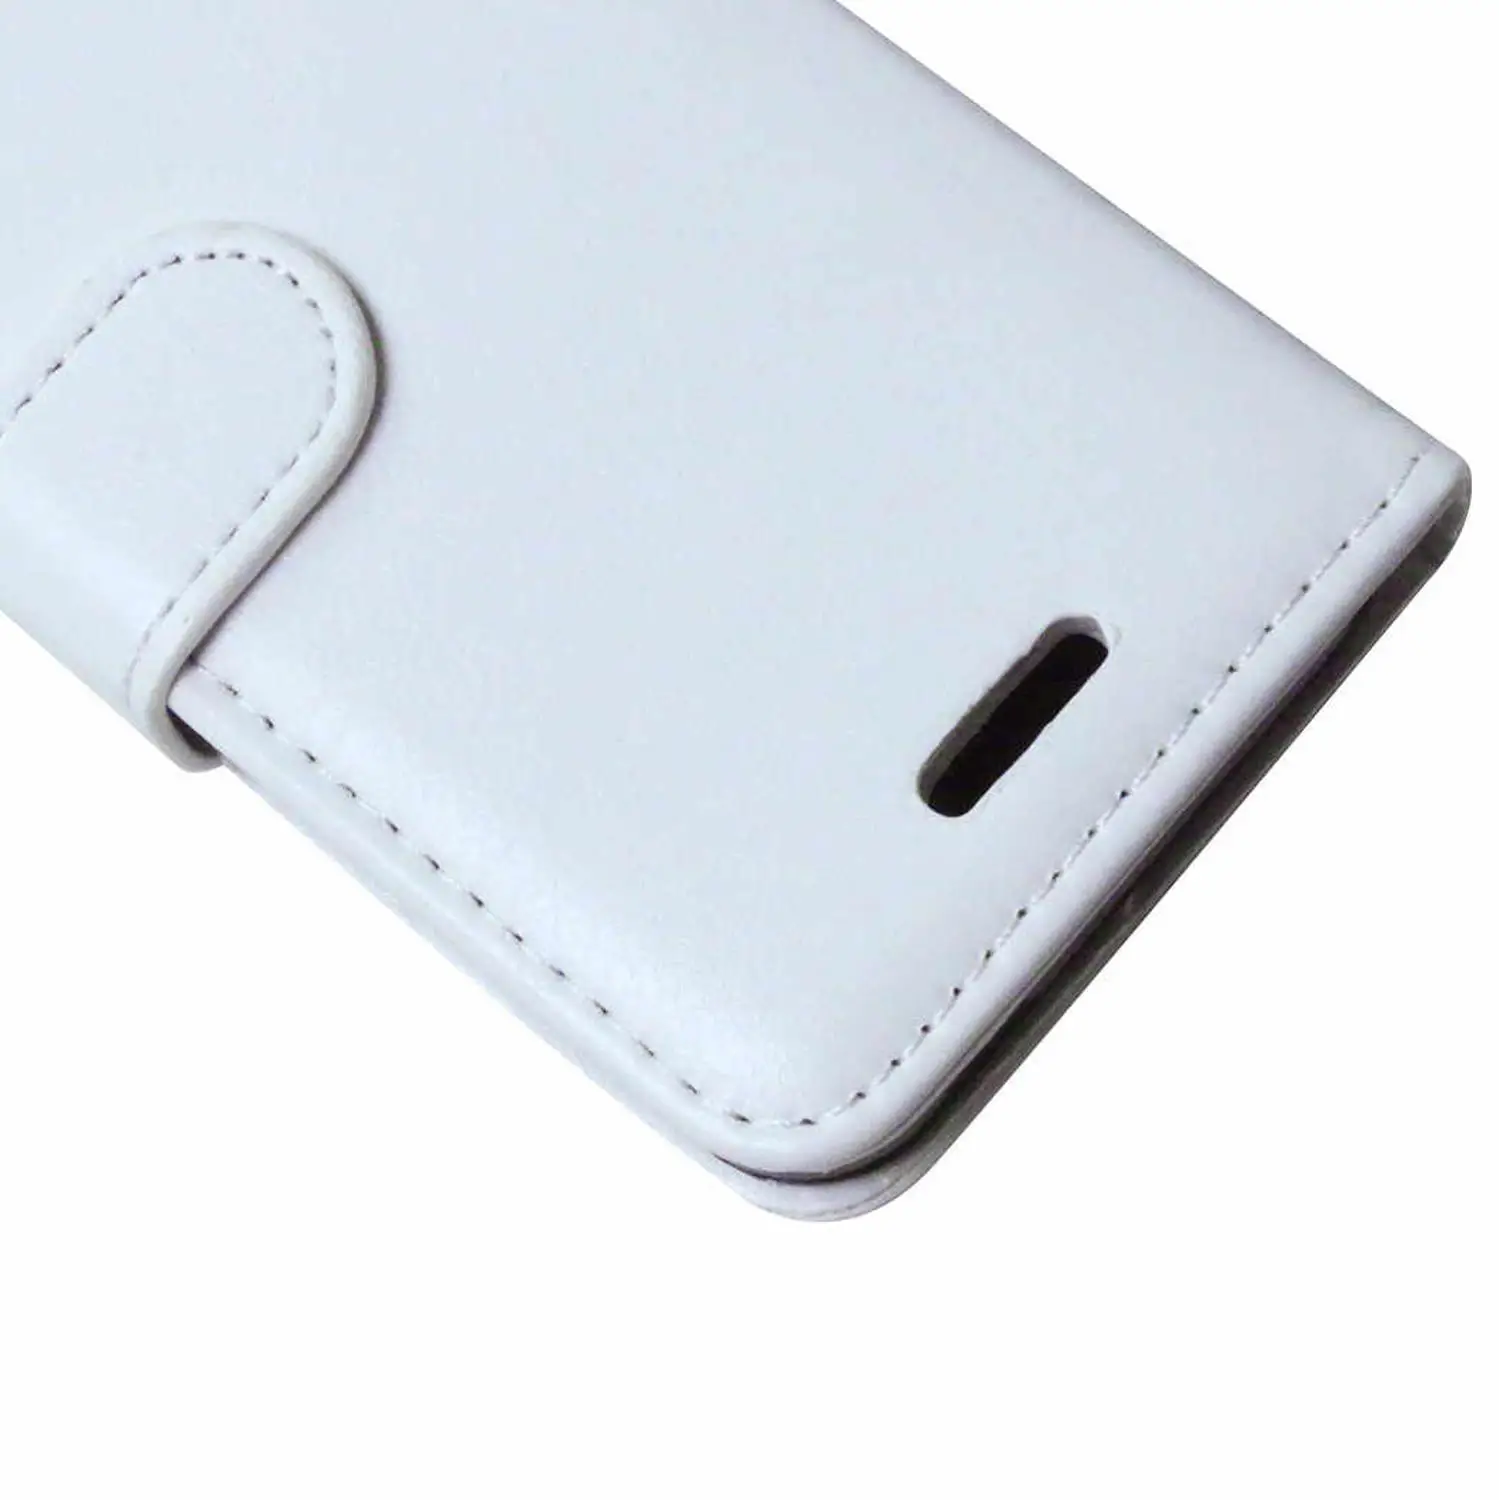 Флип для LG X Экран K500h K500i K500dsf чехол для LG X View K500ds K500dsz K500 ds 500 dsz dsf чехол кожаный чехол для телефона - Цвет: White